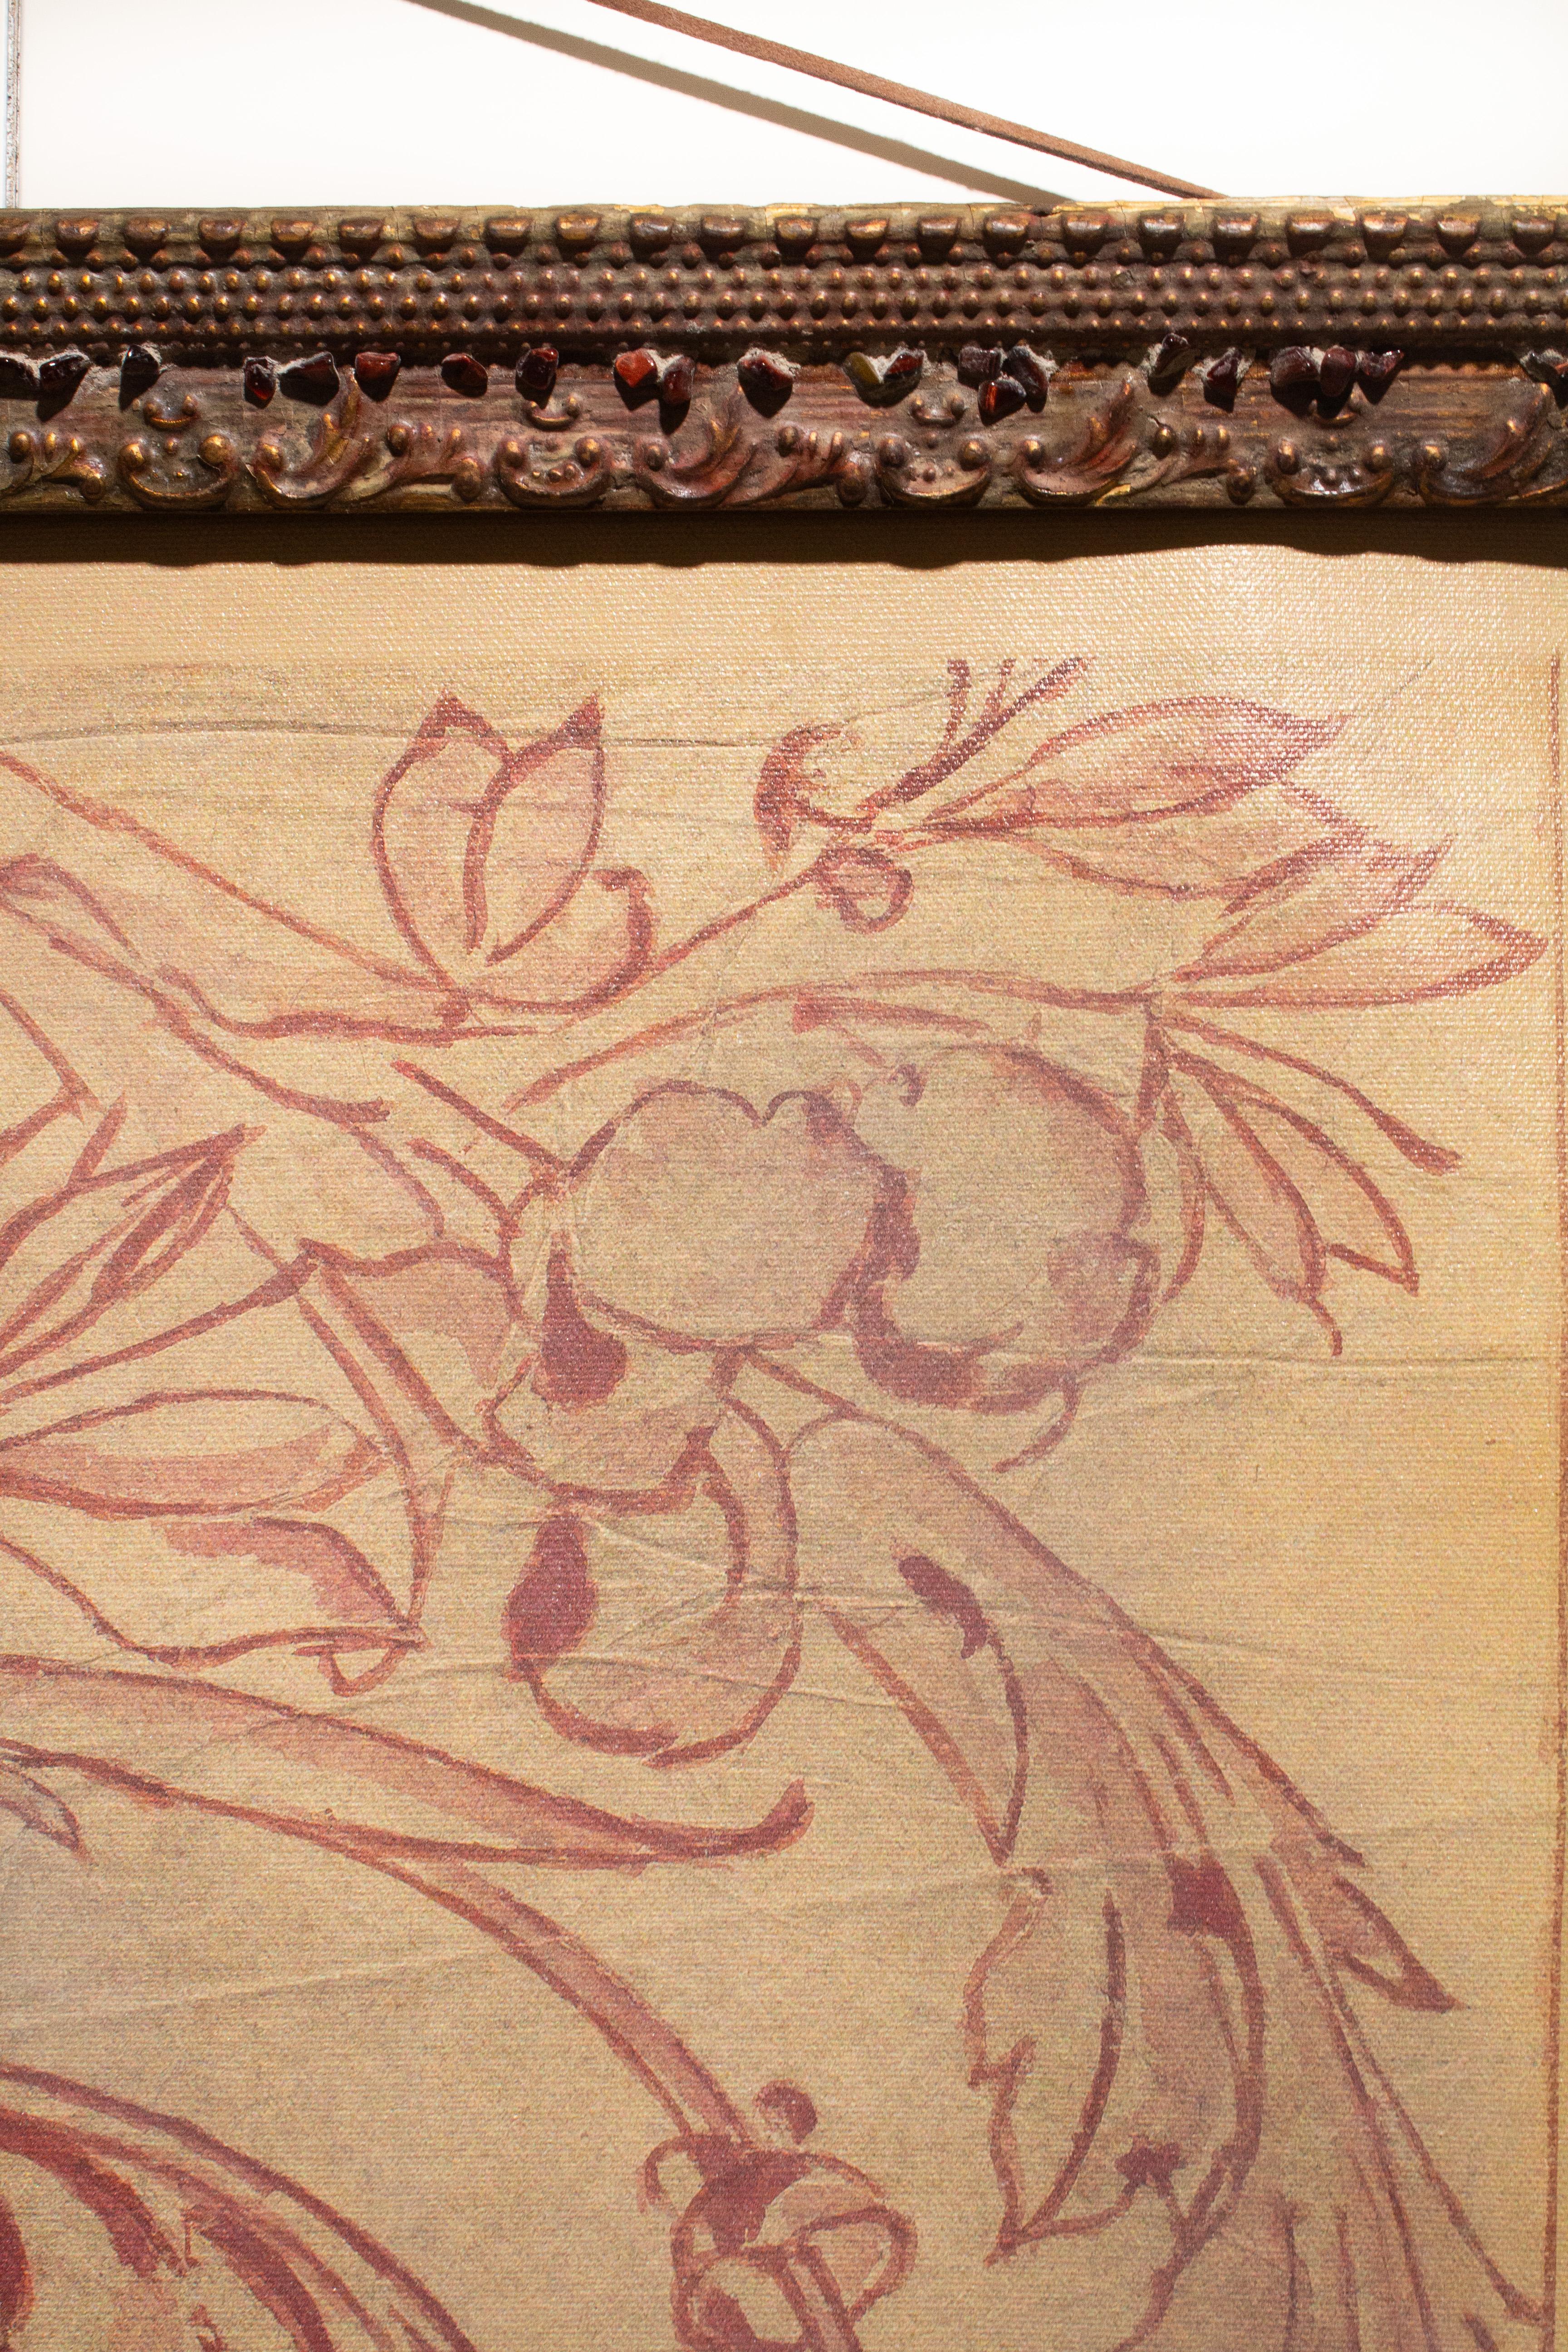 Motif de fresque spolvero italienne du XVIIIe siècle imprimé sur toile et encadré dans un cadre rouge antique et orné de pierres de rubis rouges.

Le Spolvero est une méthode artistique qui consiste à transférer un dessin d'une impression sur la